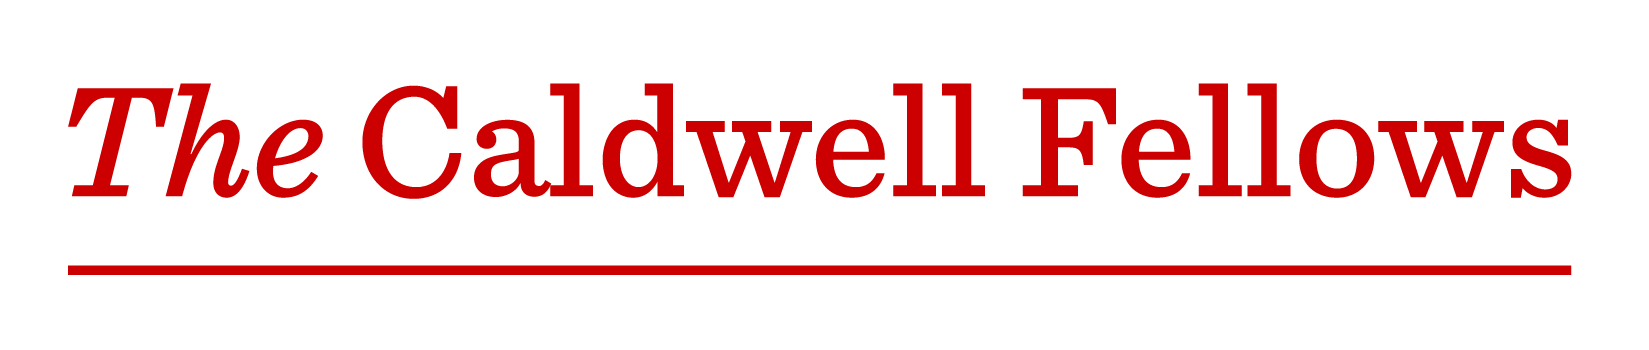 The Caldwell Fellows